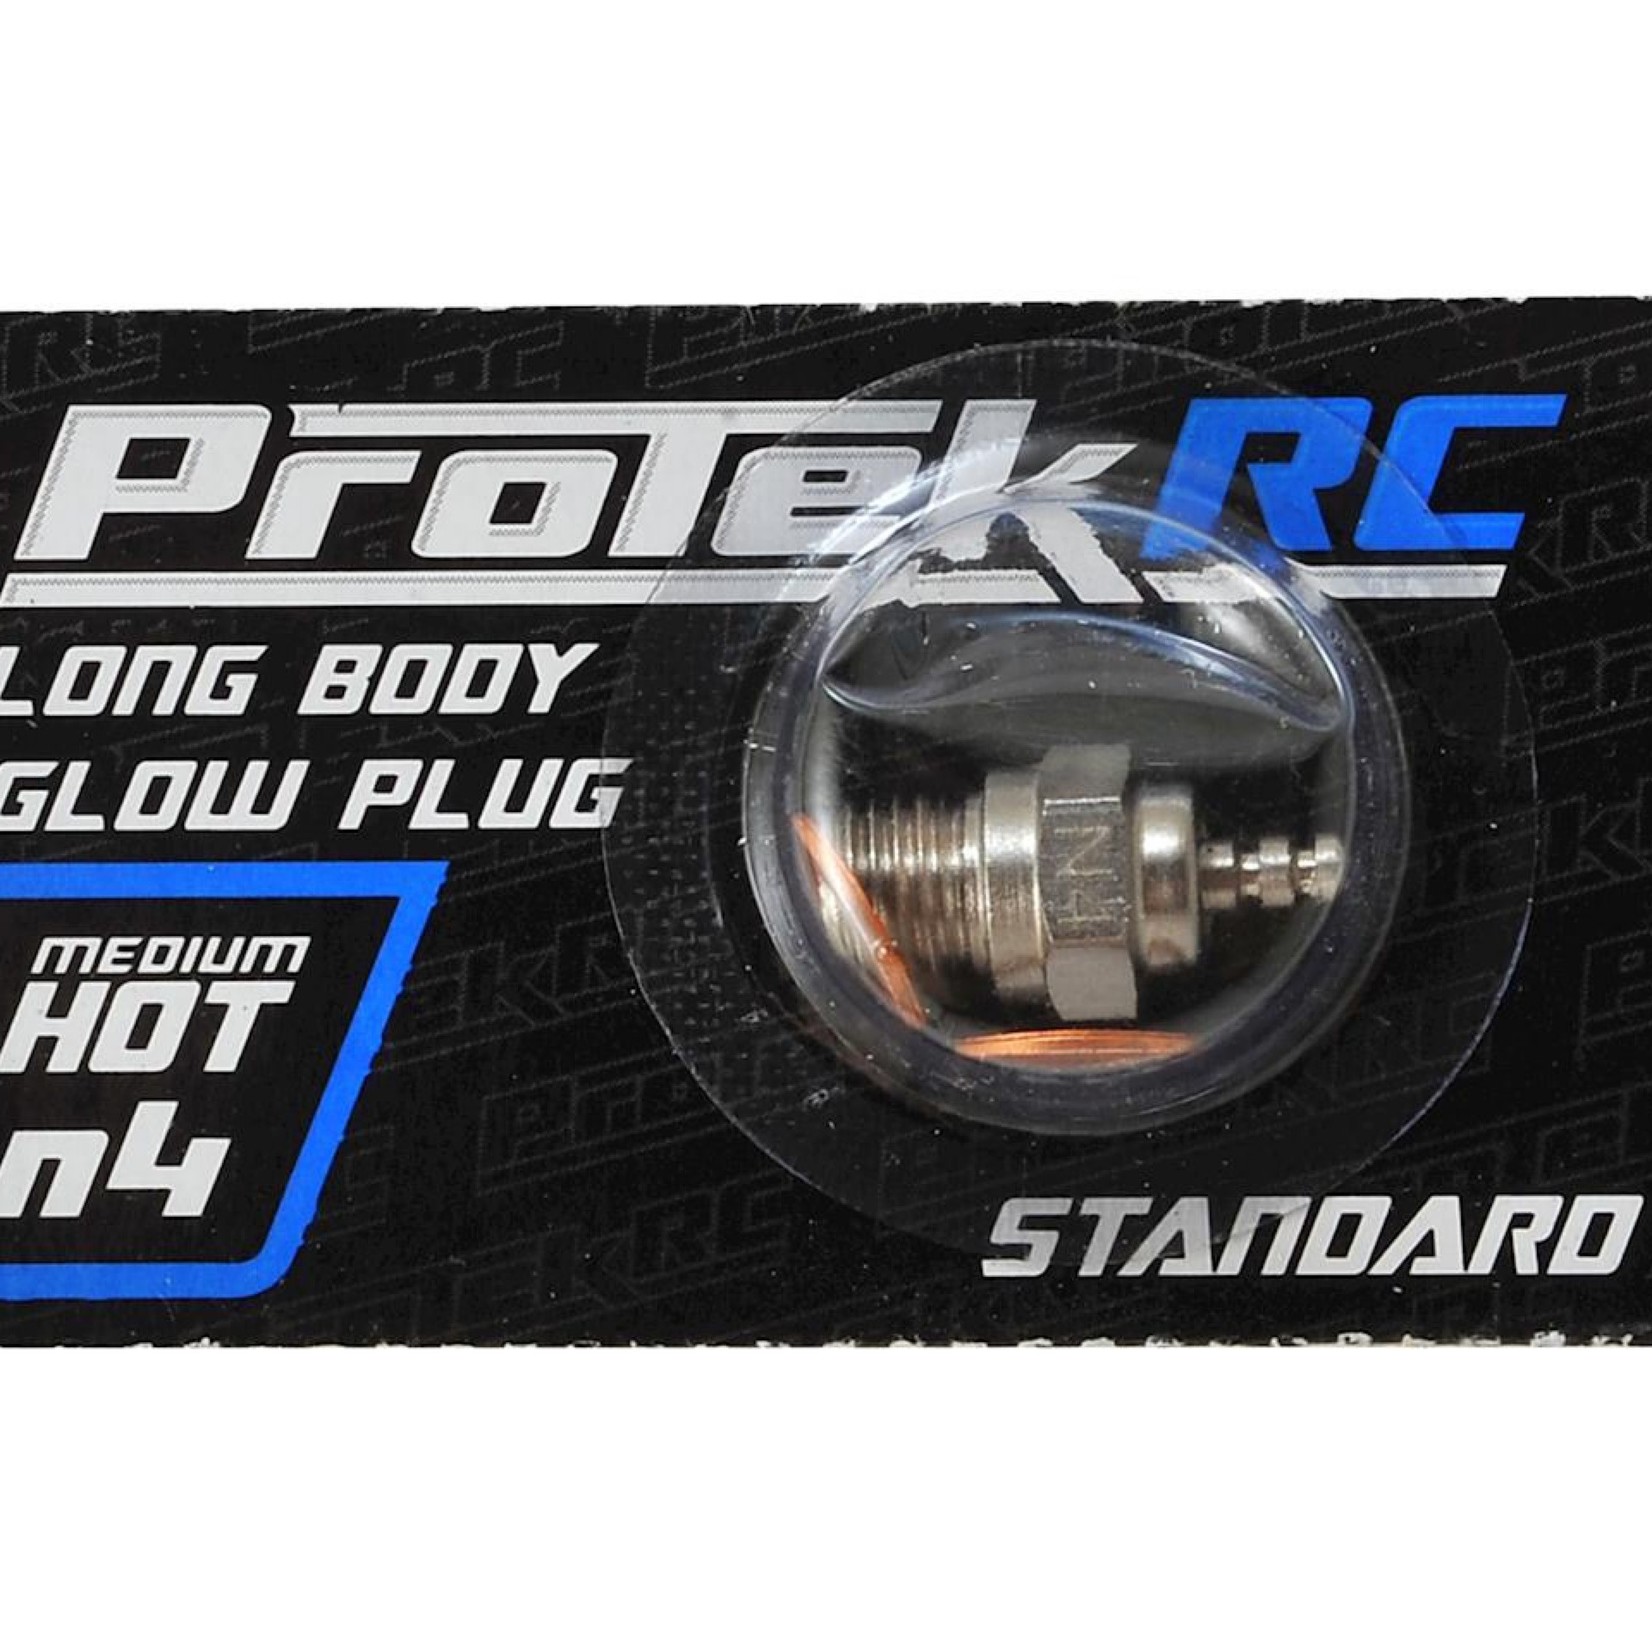 ProTek RC ProTek RC N4 Medium Hot Standard Glow Plug (.12, .15 to .28 Engines) #PTK-2554